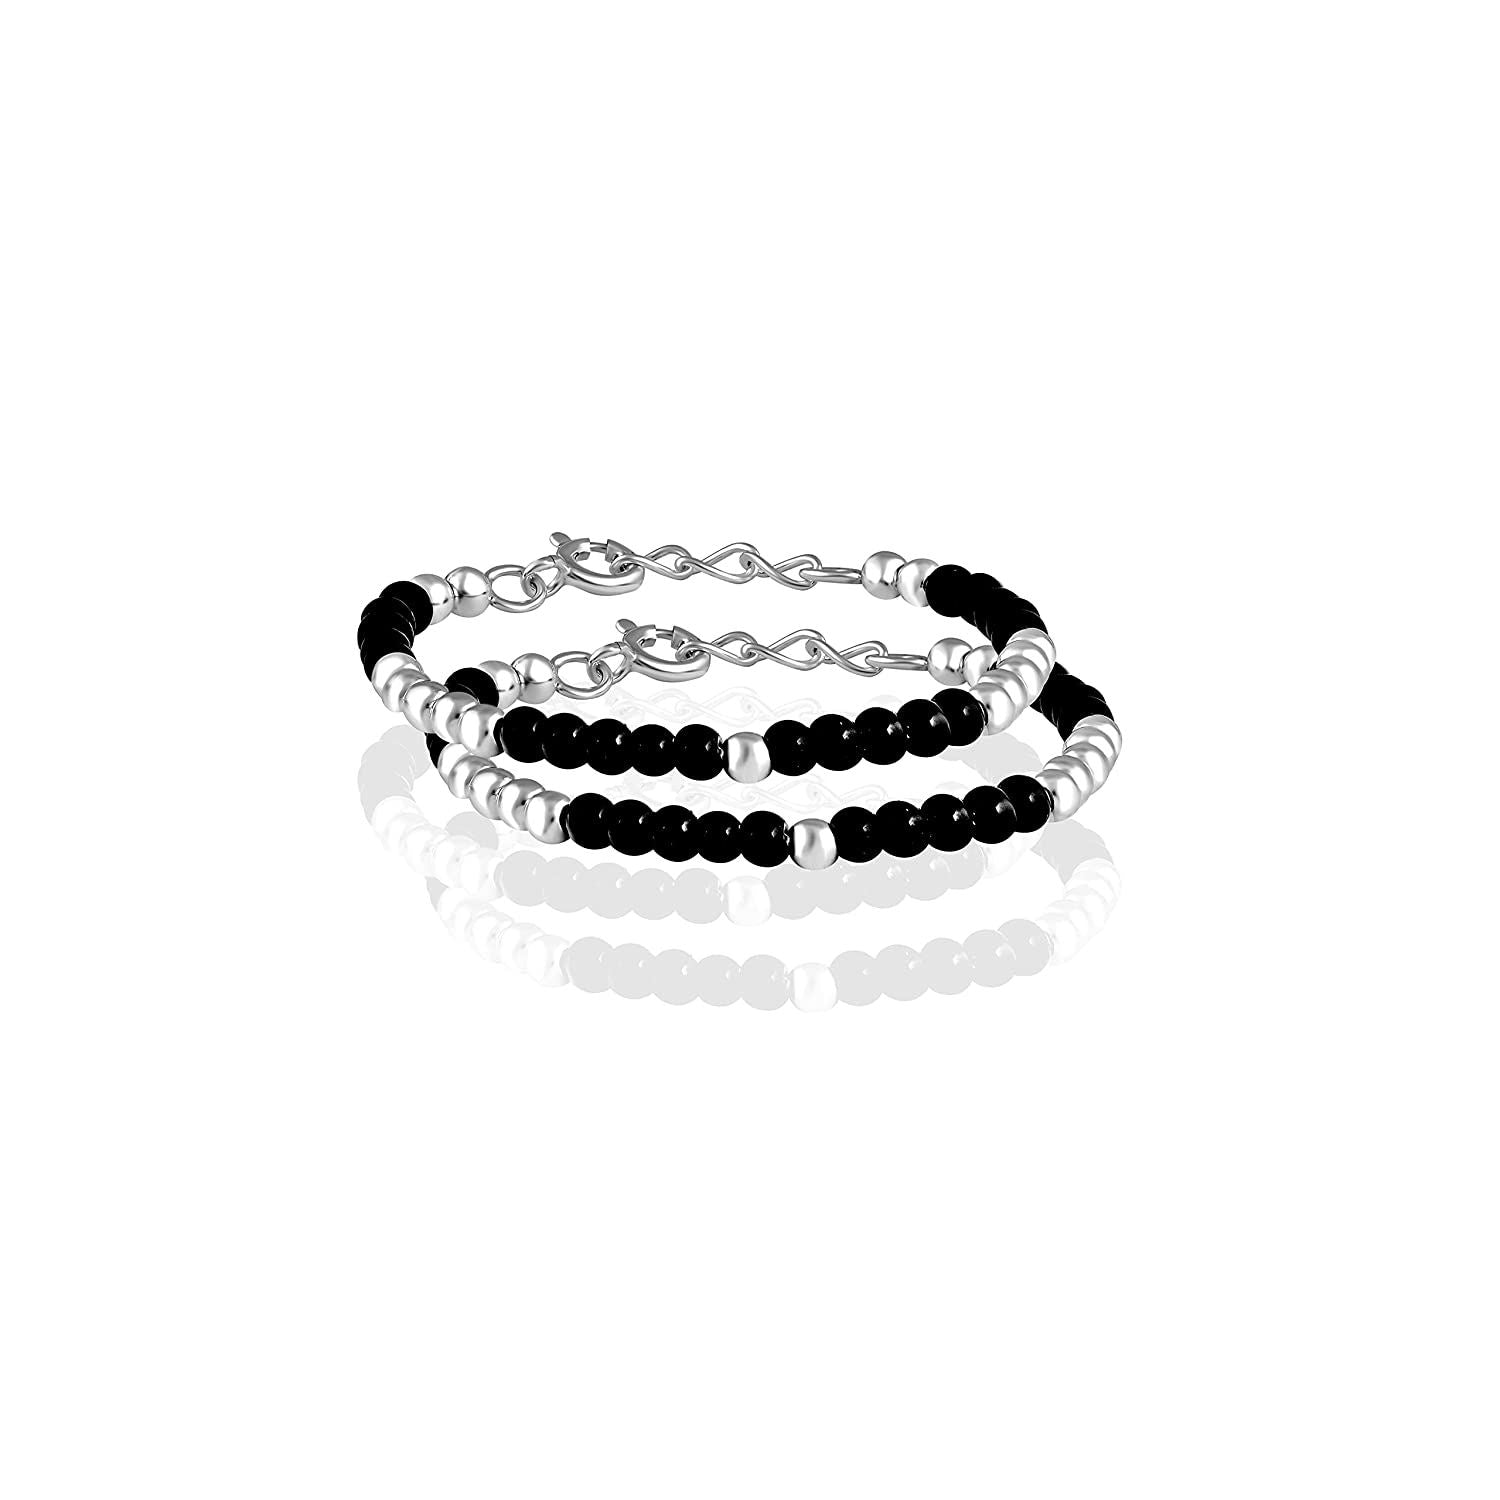 Buy Twist of Style Silver Toned Black Onyx Bracelet Online in India | Zariin